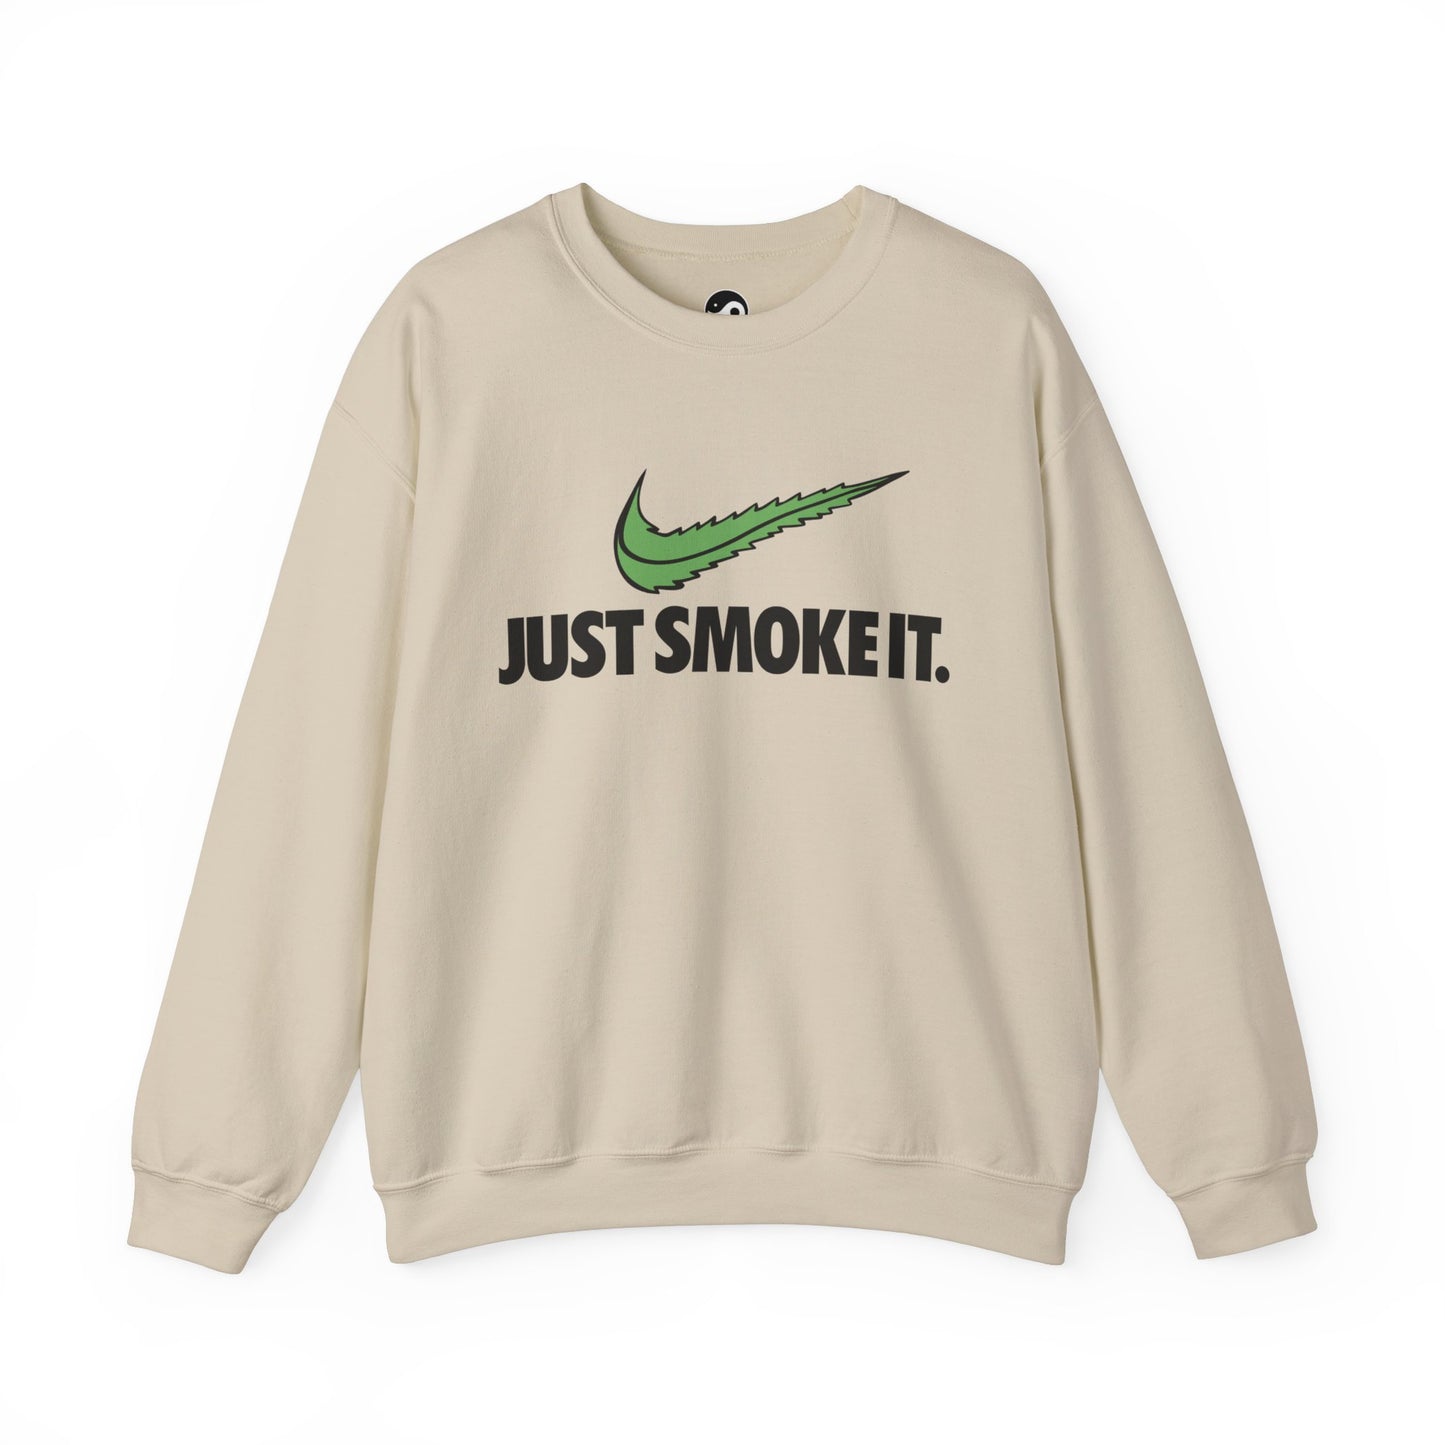 Just Smoke It unisex sweatshirt